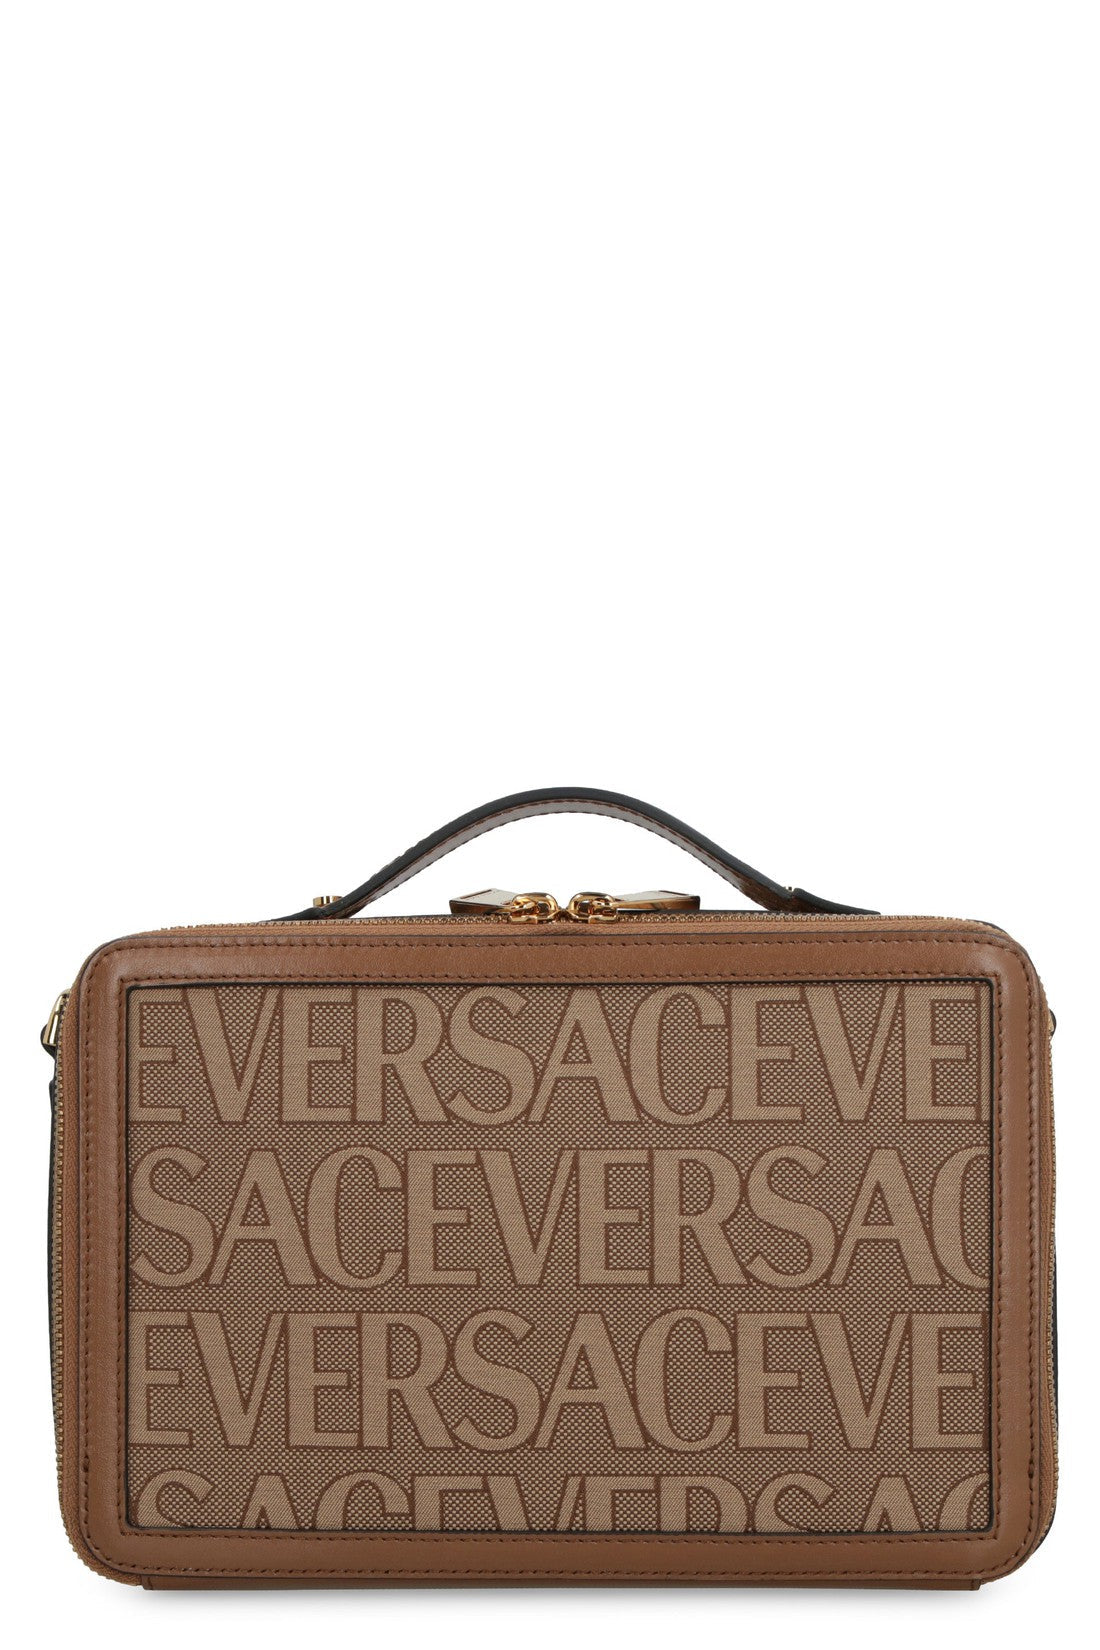 Versace-OUTLET-SALE-Canvas messenger bag-ARCHIVIST